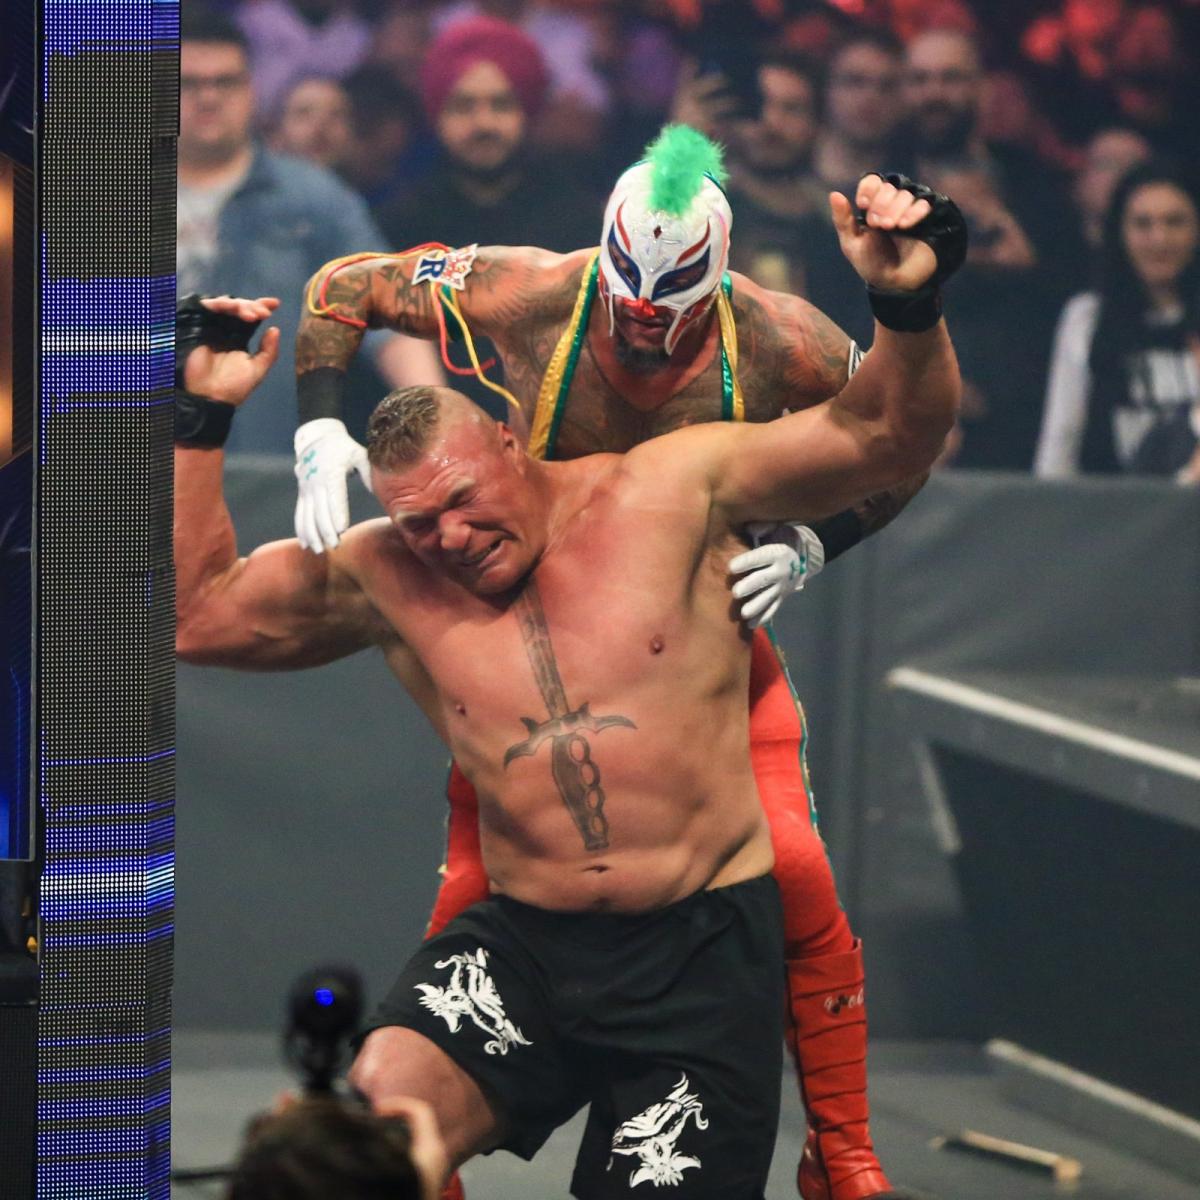 神秘人雷尔父子大战WWE冠军布洛克莱斯纳抓拍《幸存者大赛2019》